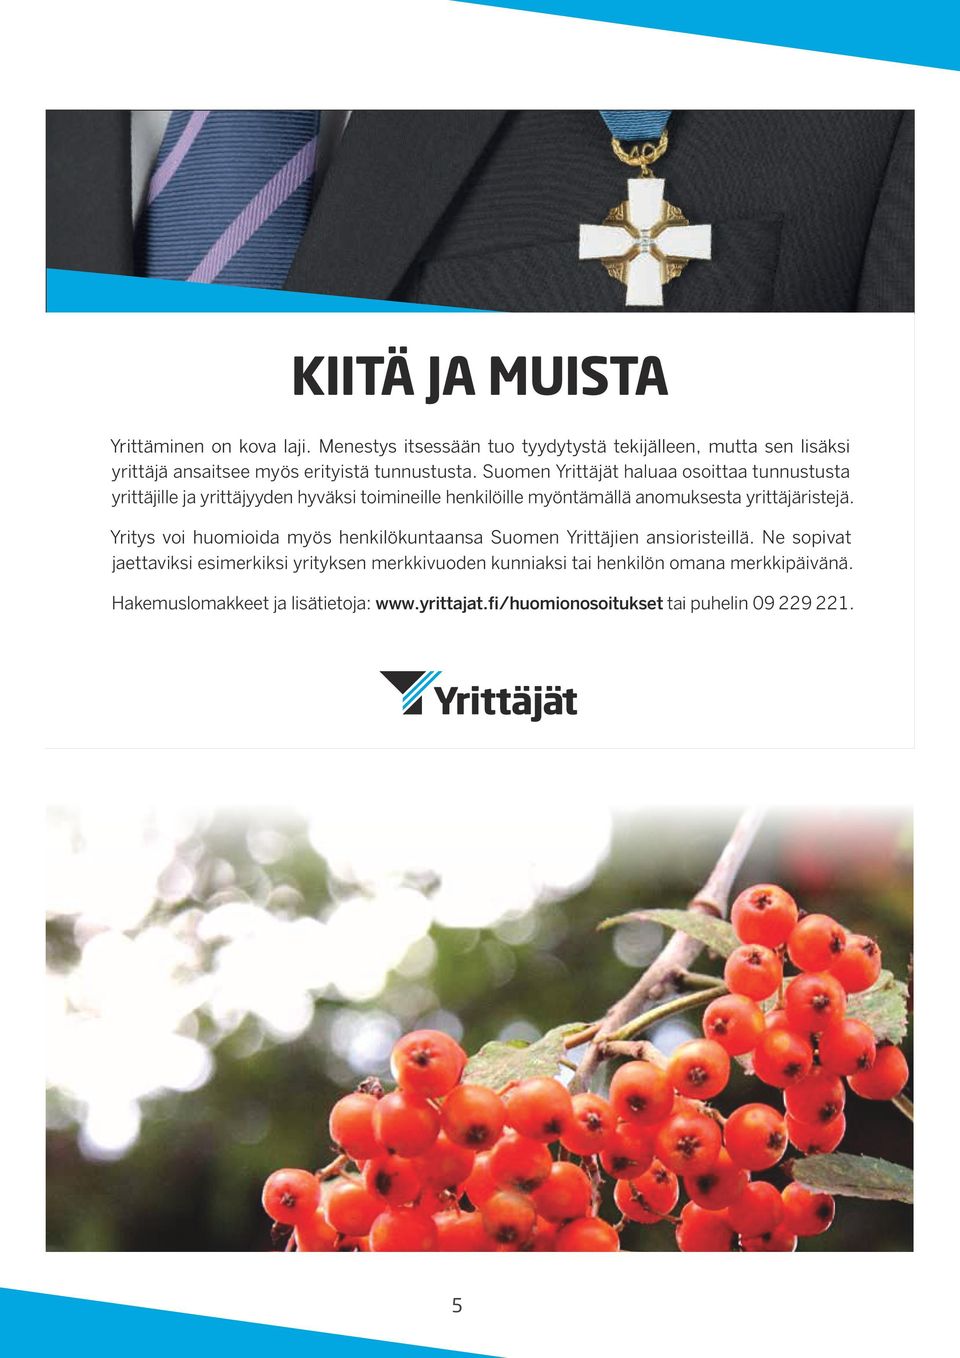 Suomen Yrittäjät haluaa osoittaa tunnustusta yrittäjille ja yrittäjyyden hyväksi toimineille henkilöille myöntämällä anomuksesta